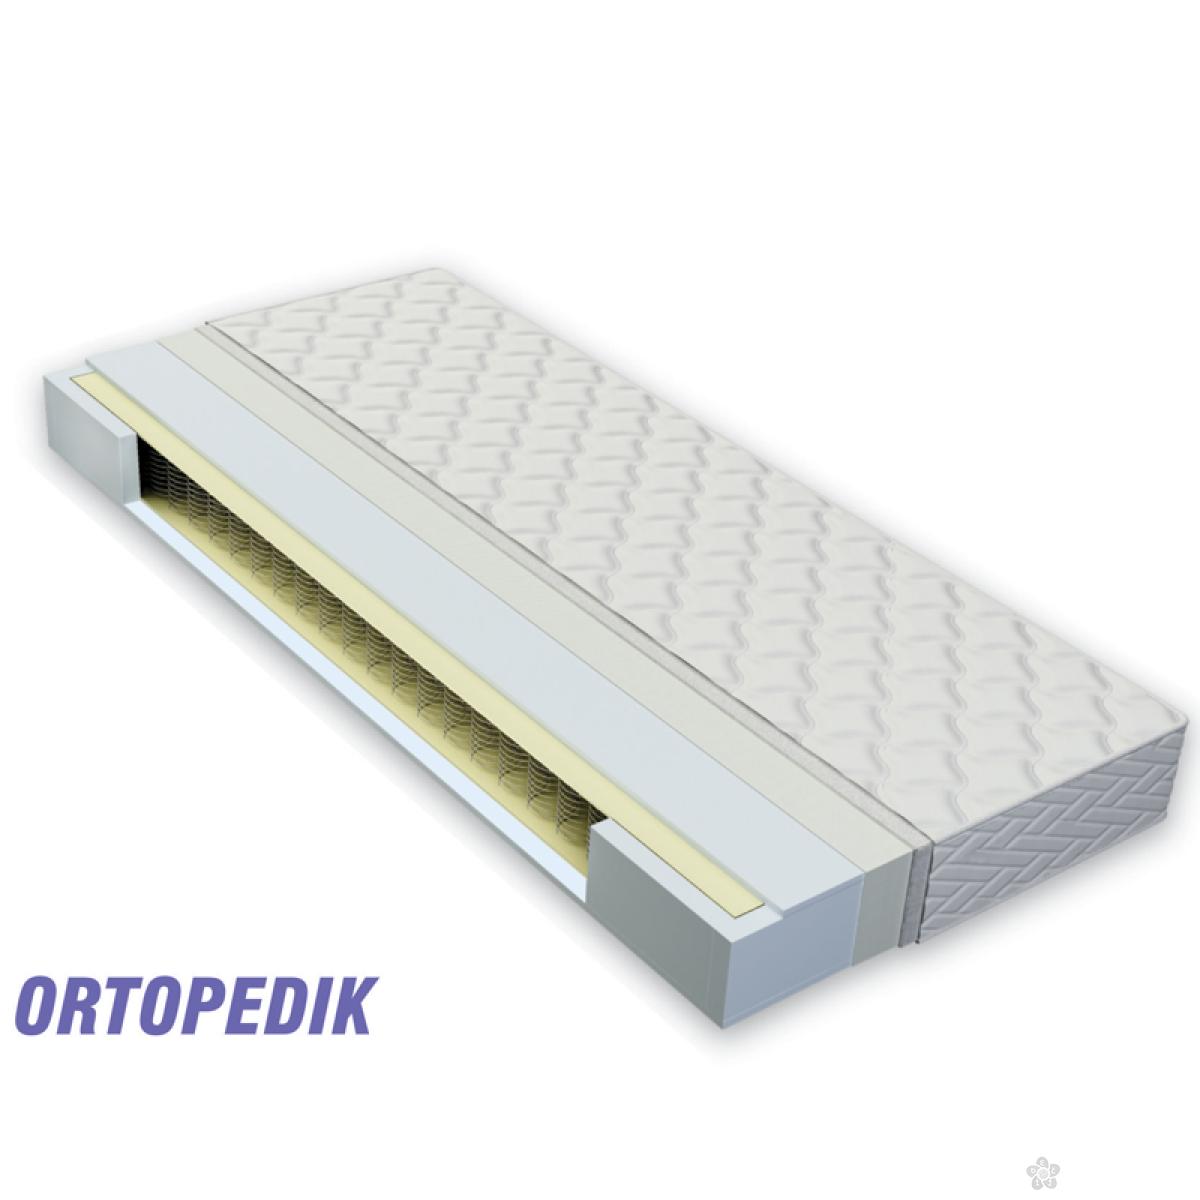 Dušek za krevetac - ortopedic 120 x 60 